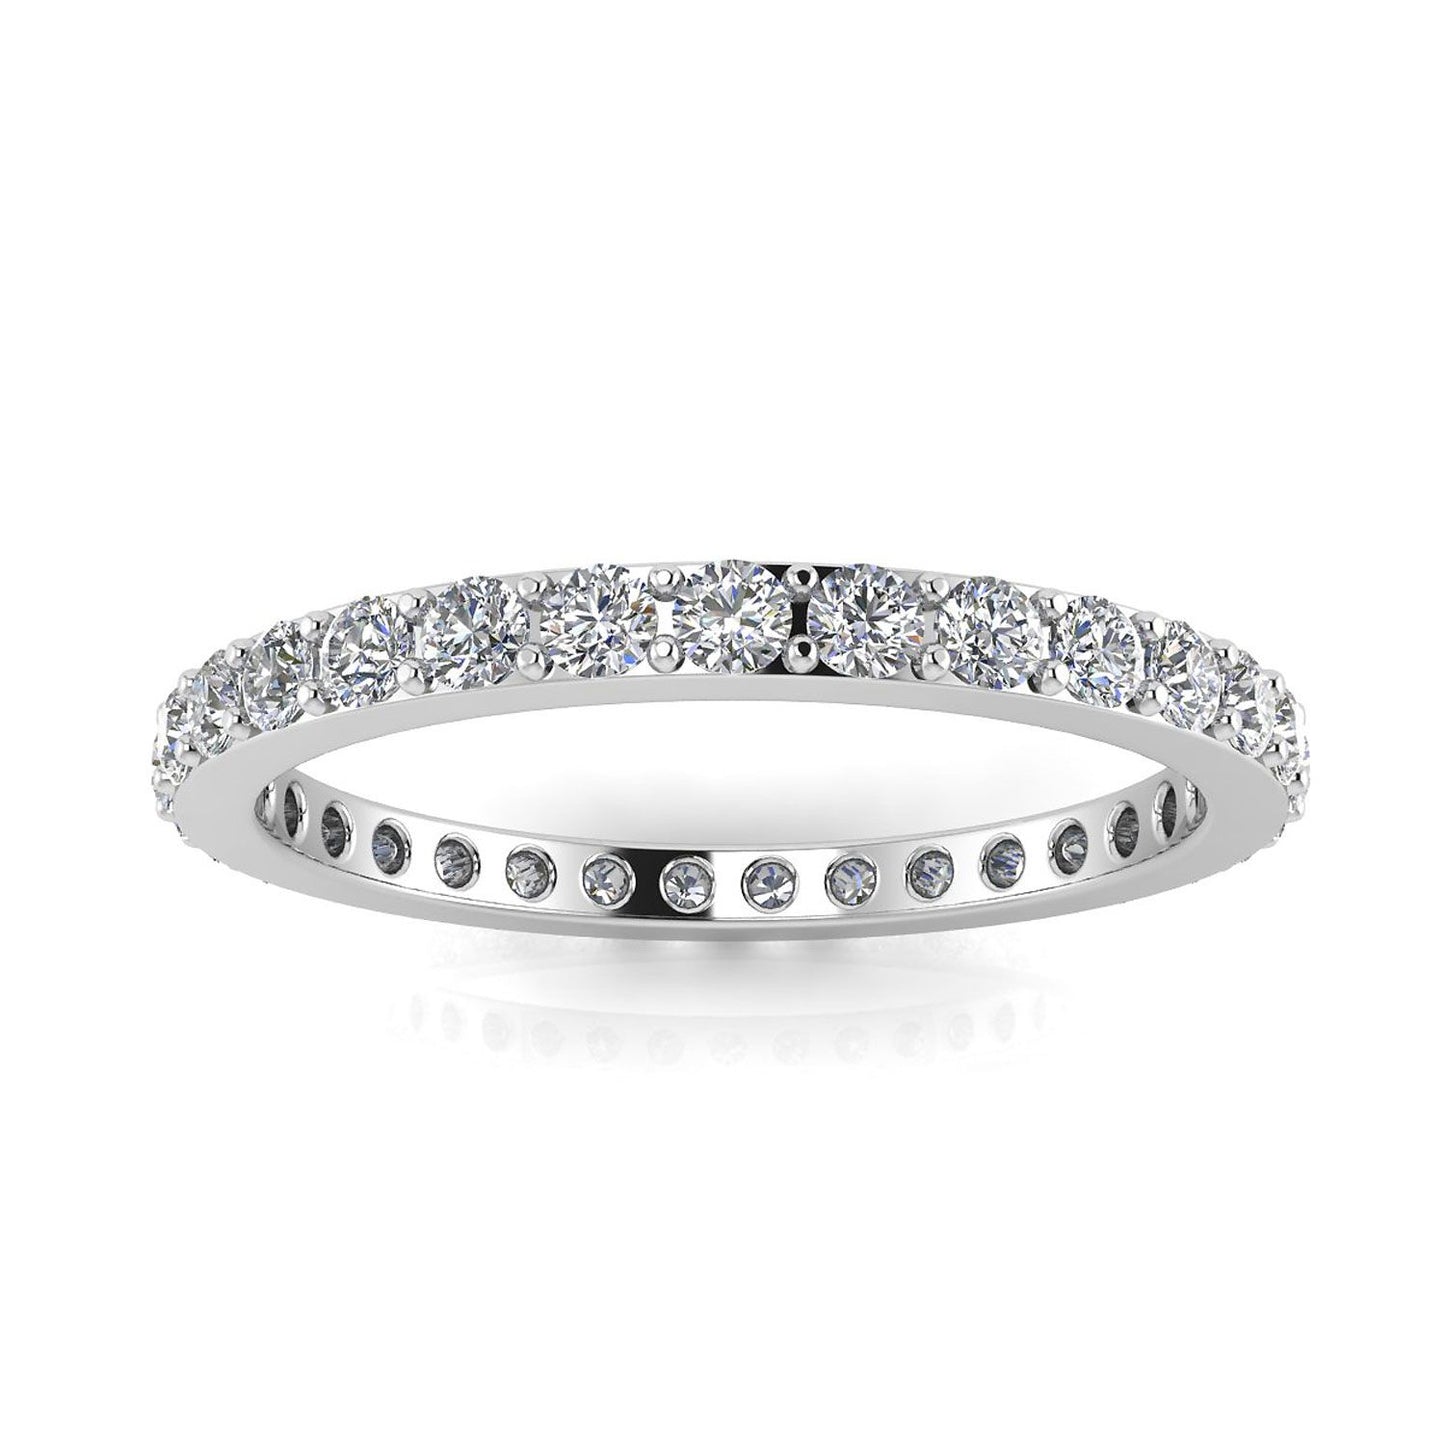 แหวนไพลินเจียระไนเพชรกลมตั้ง Eternity Ring ทองคำขาว 18k (1.37 กะรัต Tw.) ขนาดแหวน 5